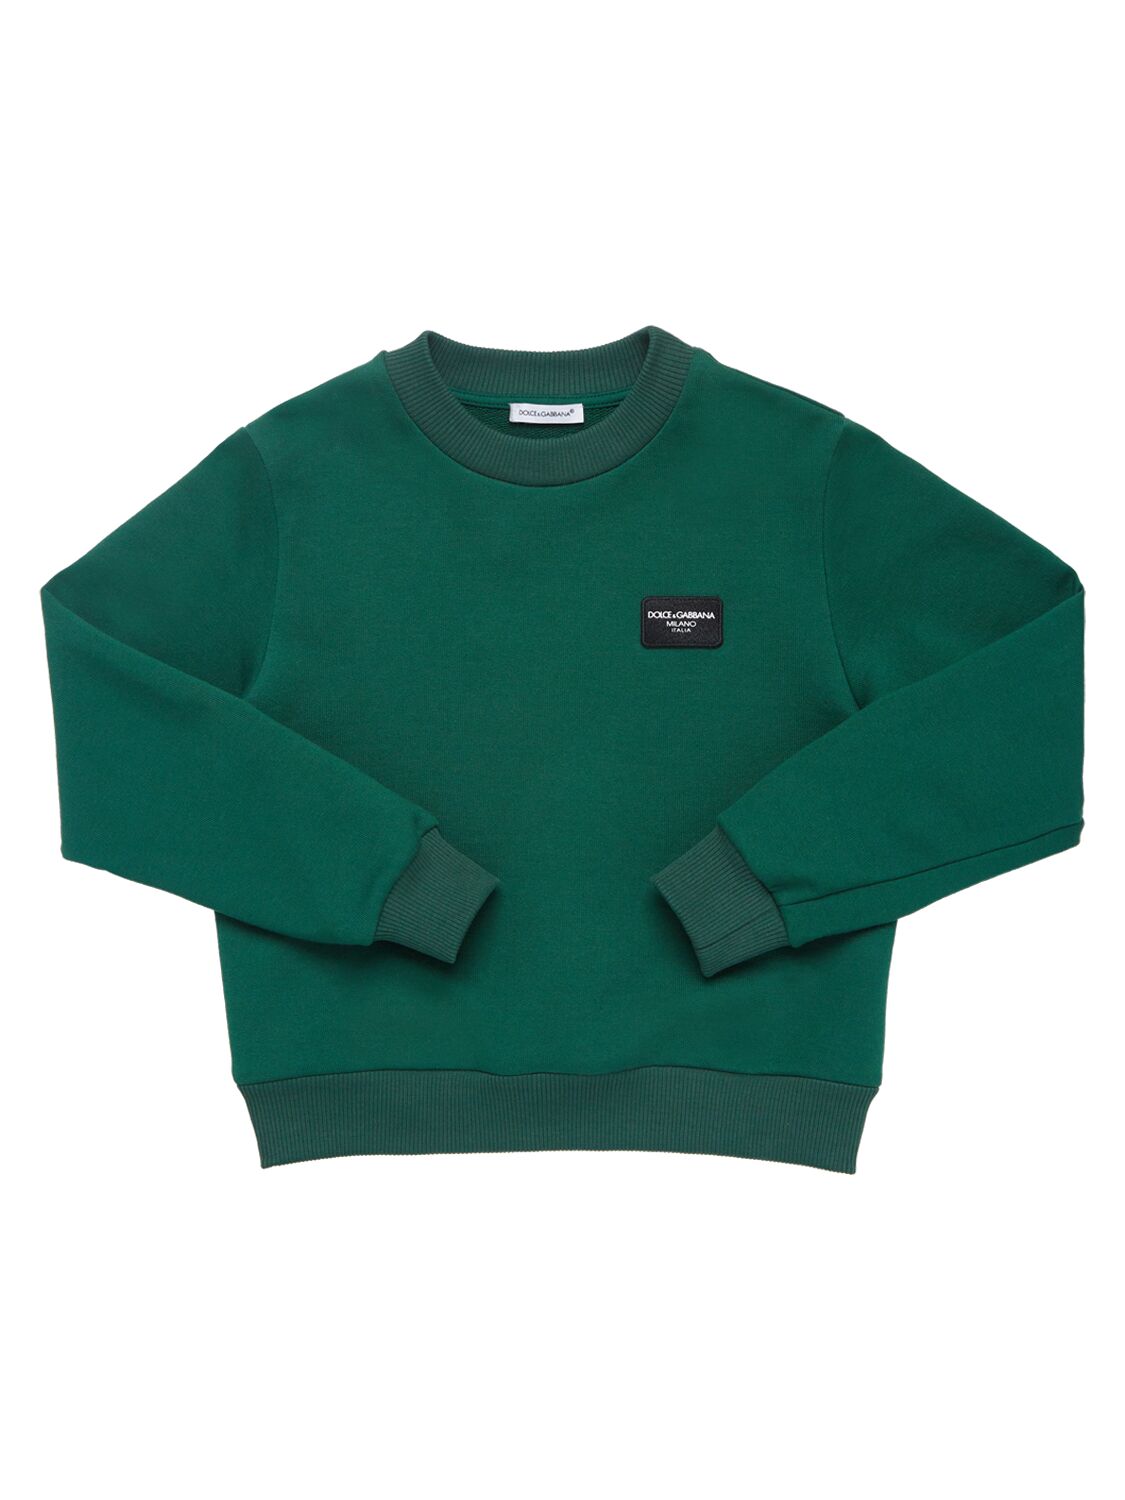 Dolce & Gabbana Kids' Sweatshirt Aus Baumwolle Mit Logodruck In Dunkelgrün